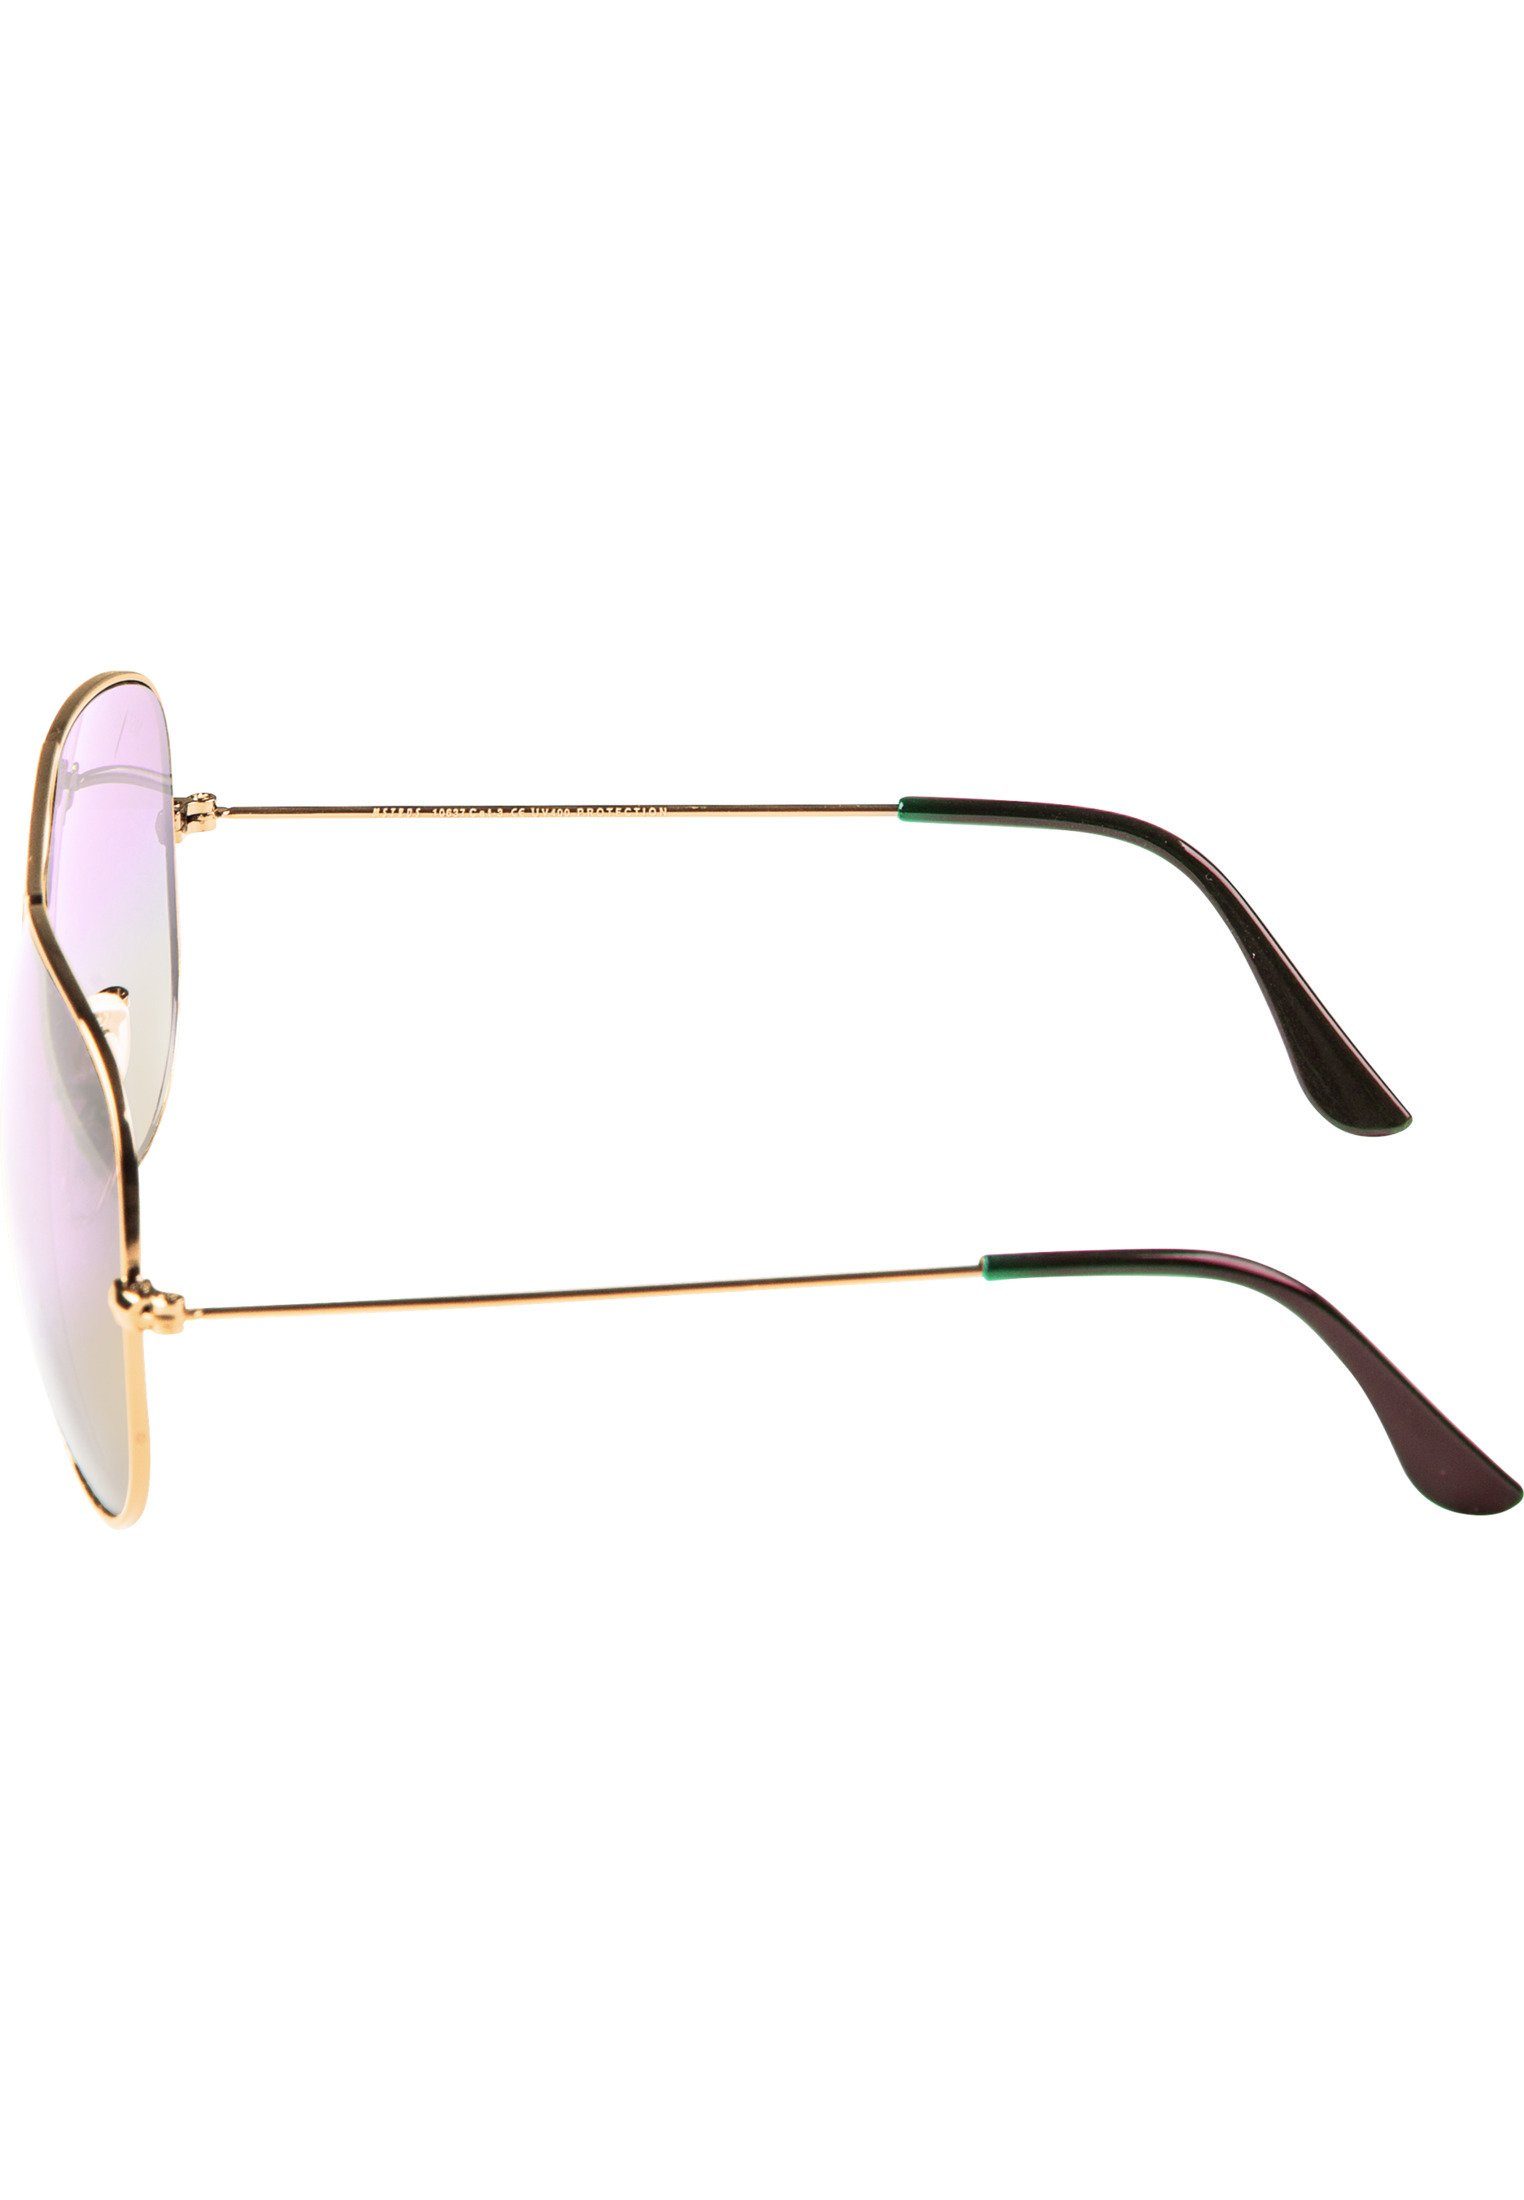 MSTRDS Youth gold/rosé Sunglasses Sonnenbrille PureAv Accessoires